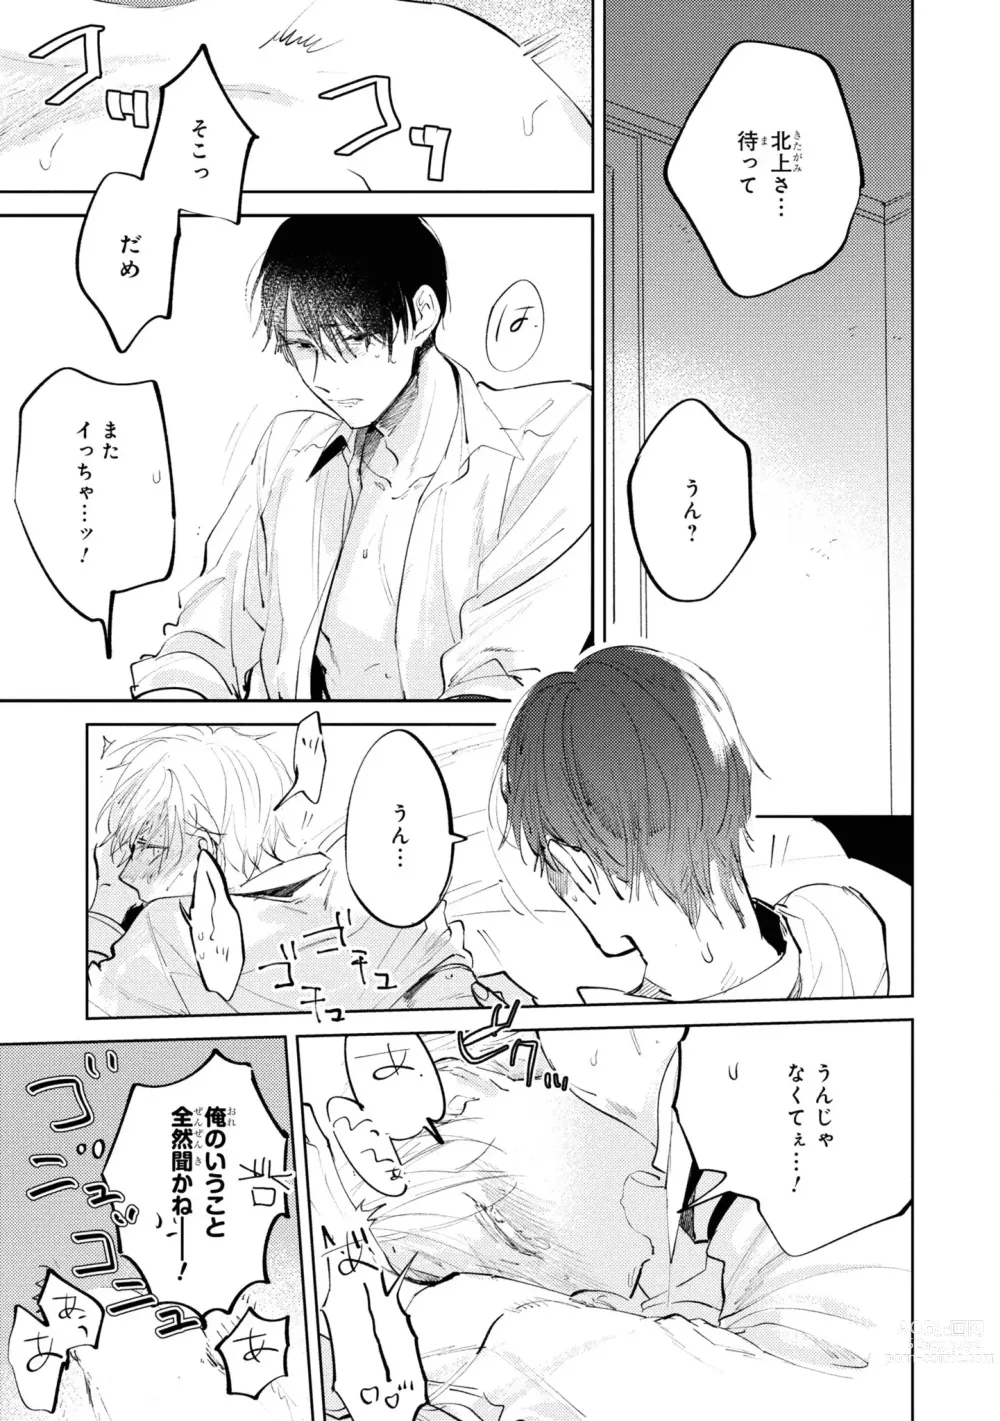 Page 147 of manga Ore no Joushi wa Mate ga Dekinai - My Boss Can Not Wait